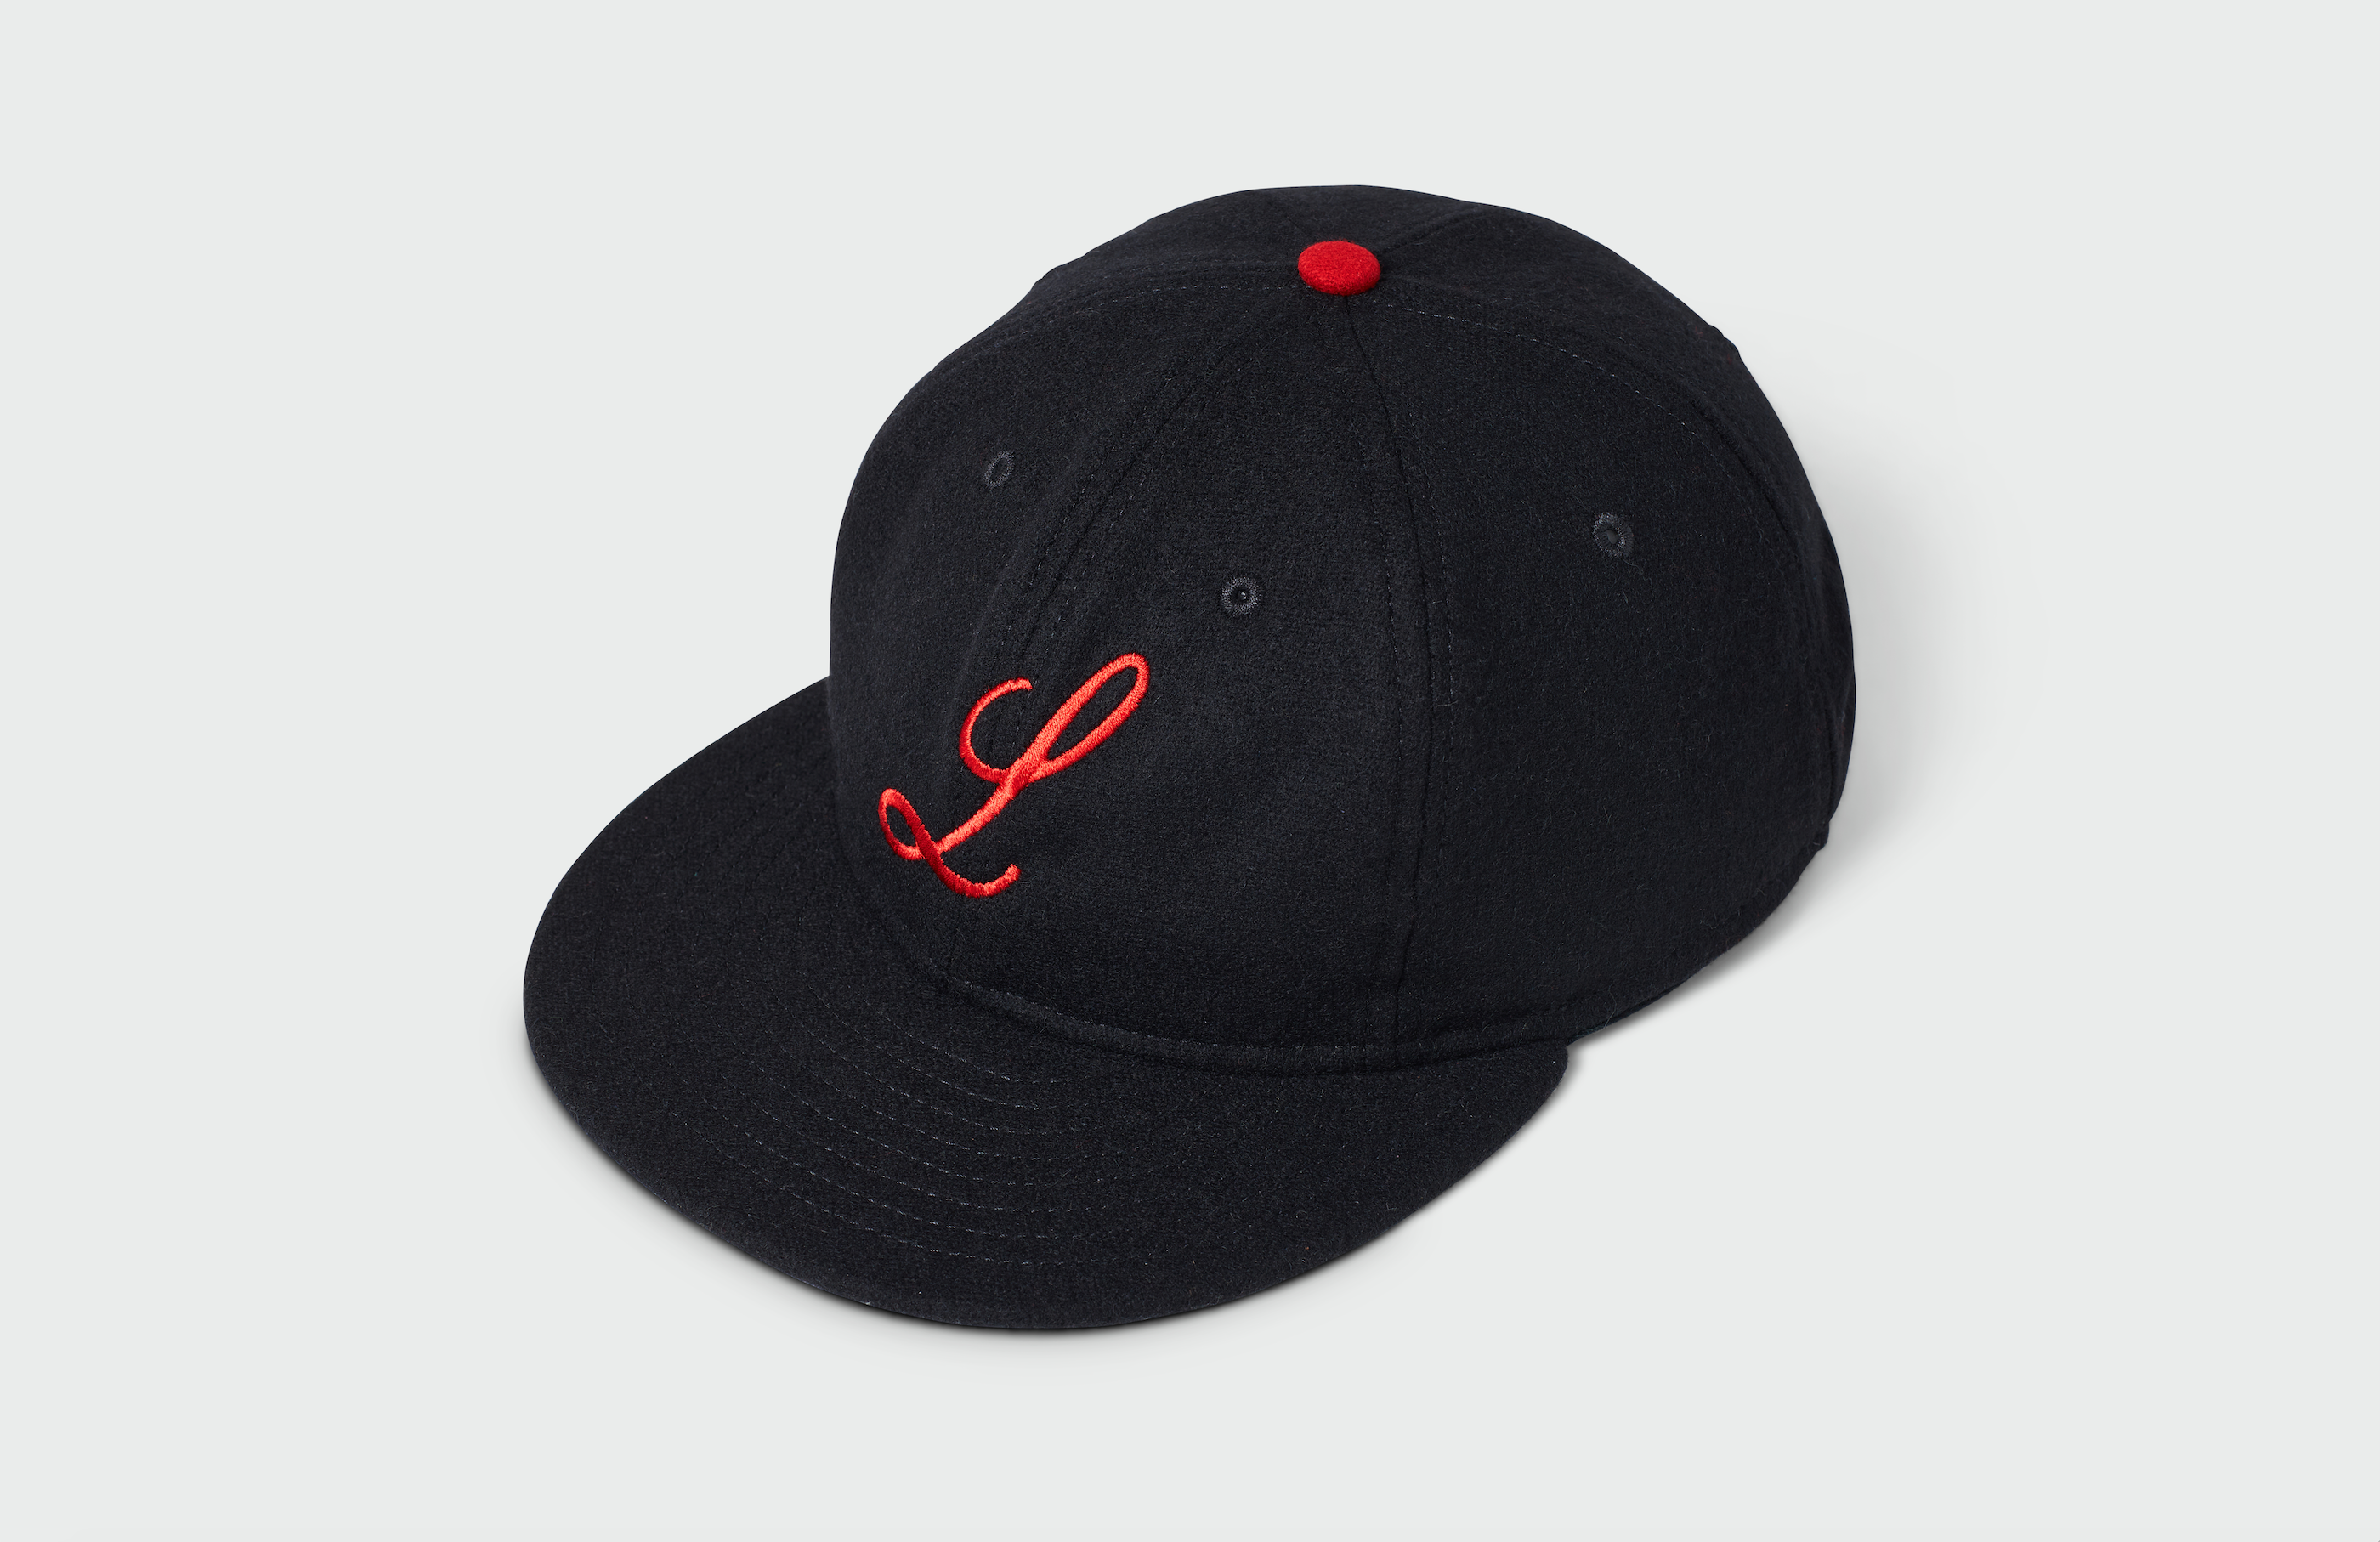 Louisville Black Caps Rings & Crwns Snapback Hat - Black